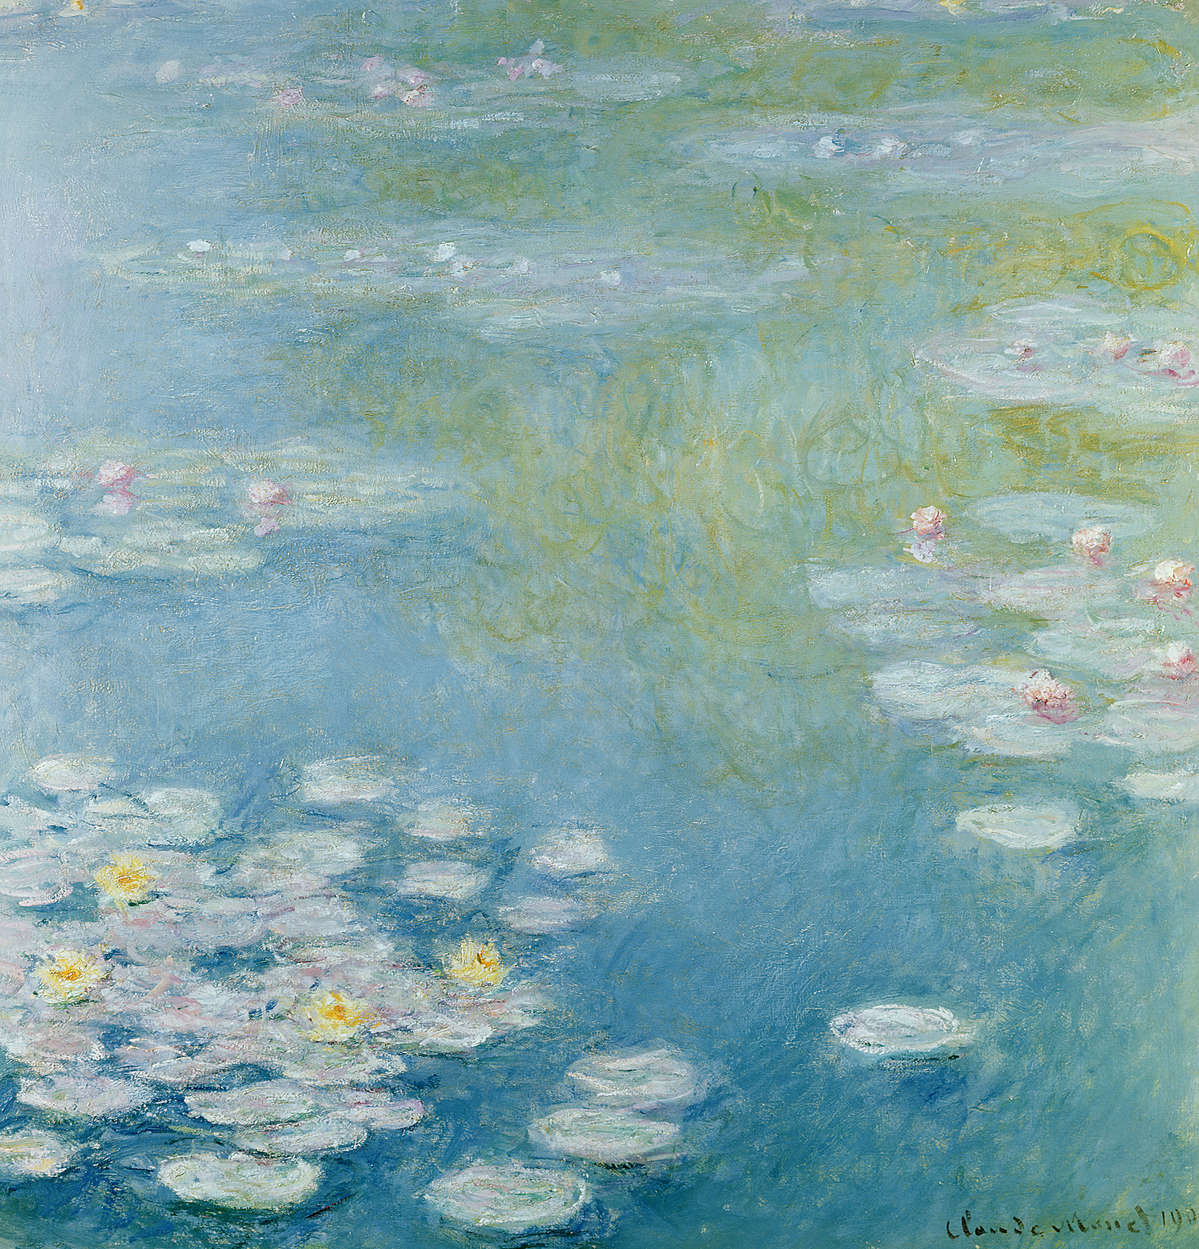             Fotomurali "Ninfe a Giverny" di Claude Monet
        